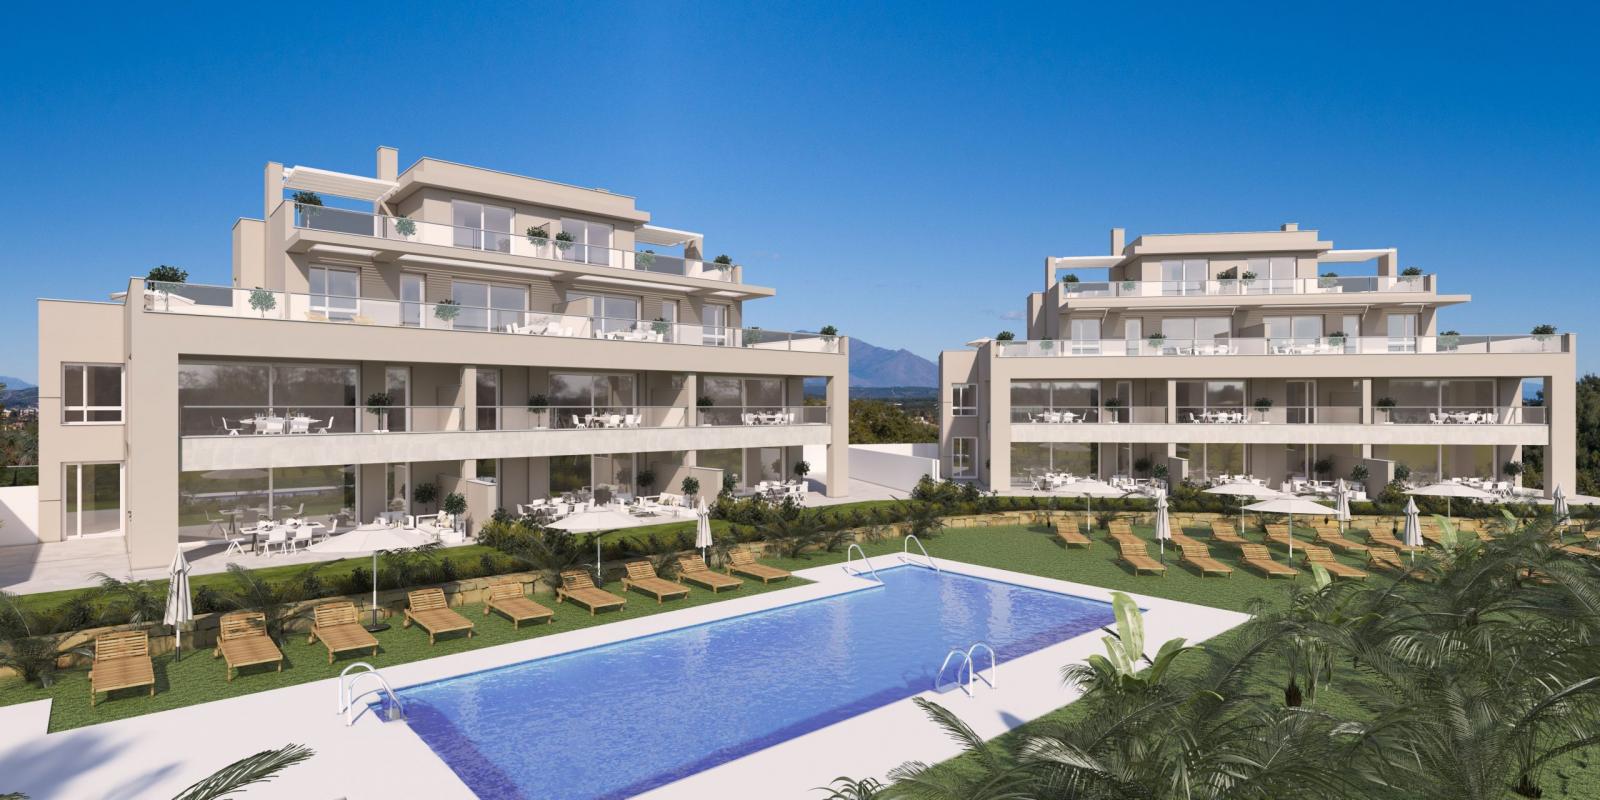 La nouvelle résidence à proximité de Valderrama Golf et de Sotogrande, à 20 minutes à peine de l’aéroport de Gibraltar et à 90 minutes des a&eacu...